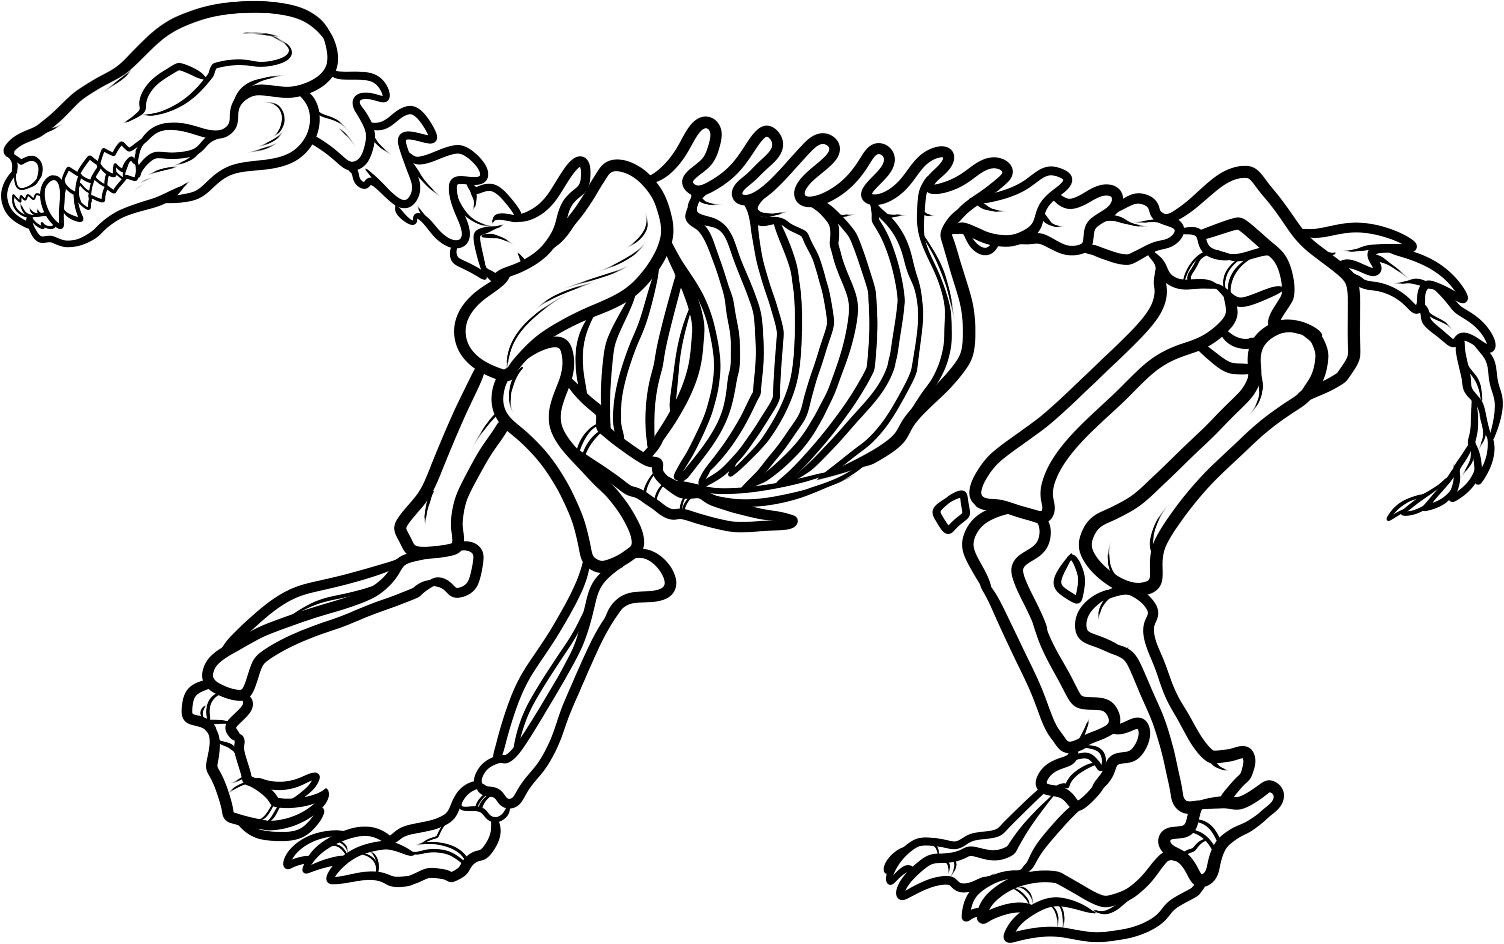 Bones clipart triceratops.